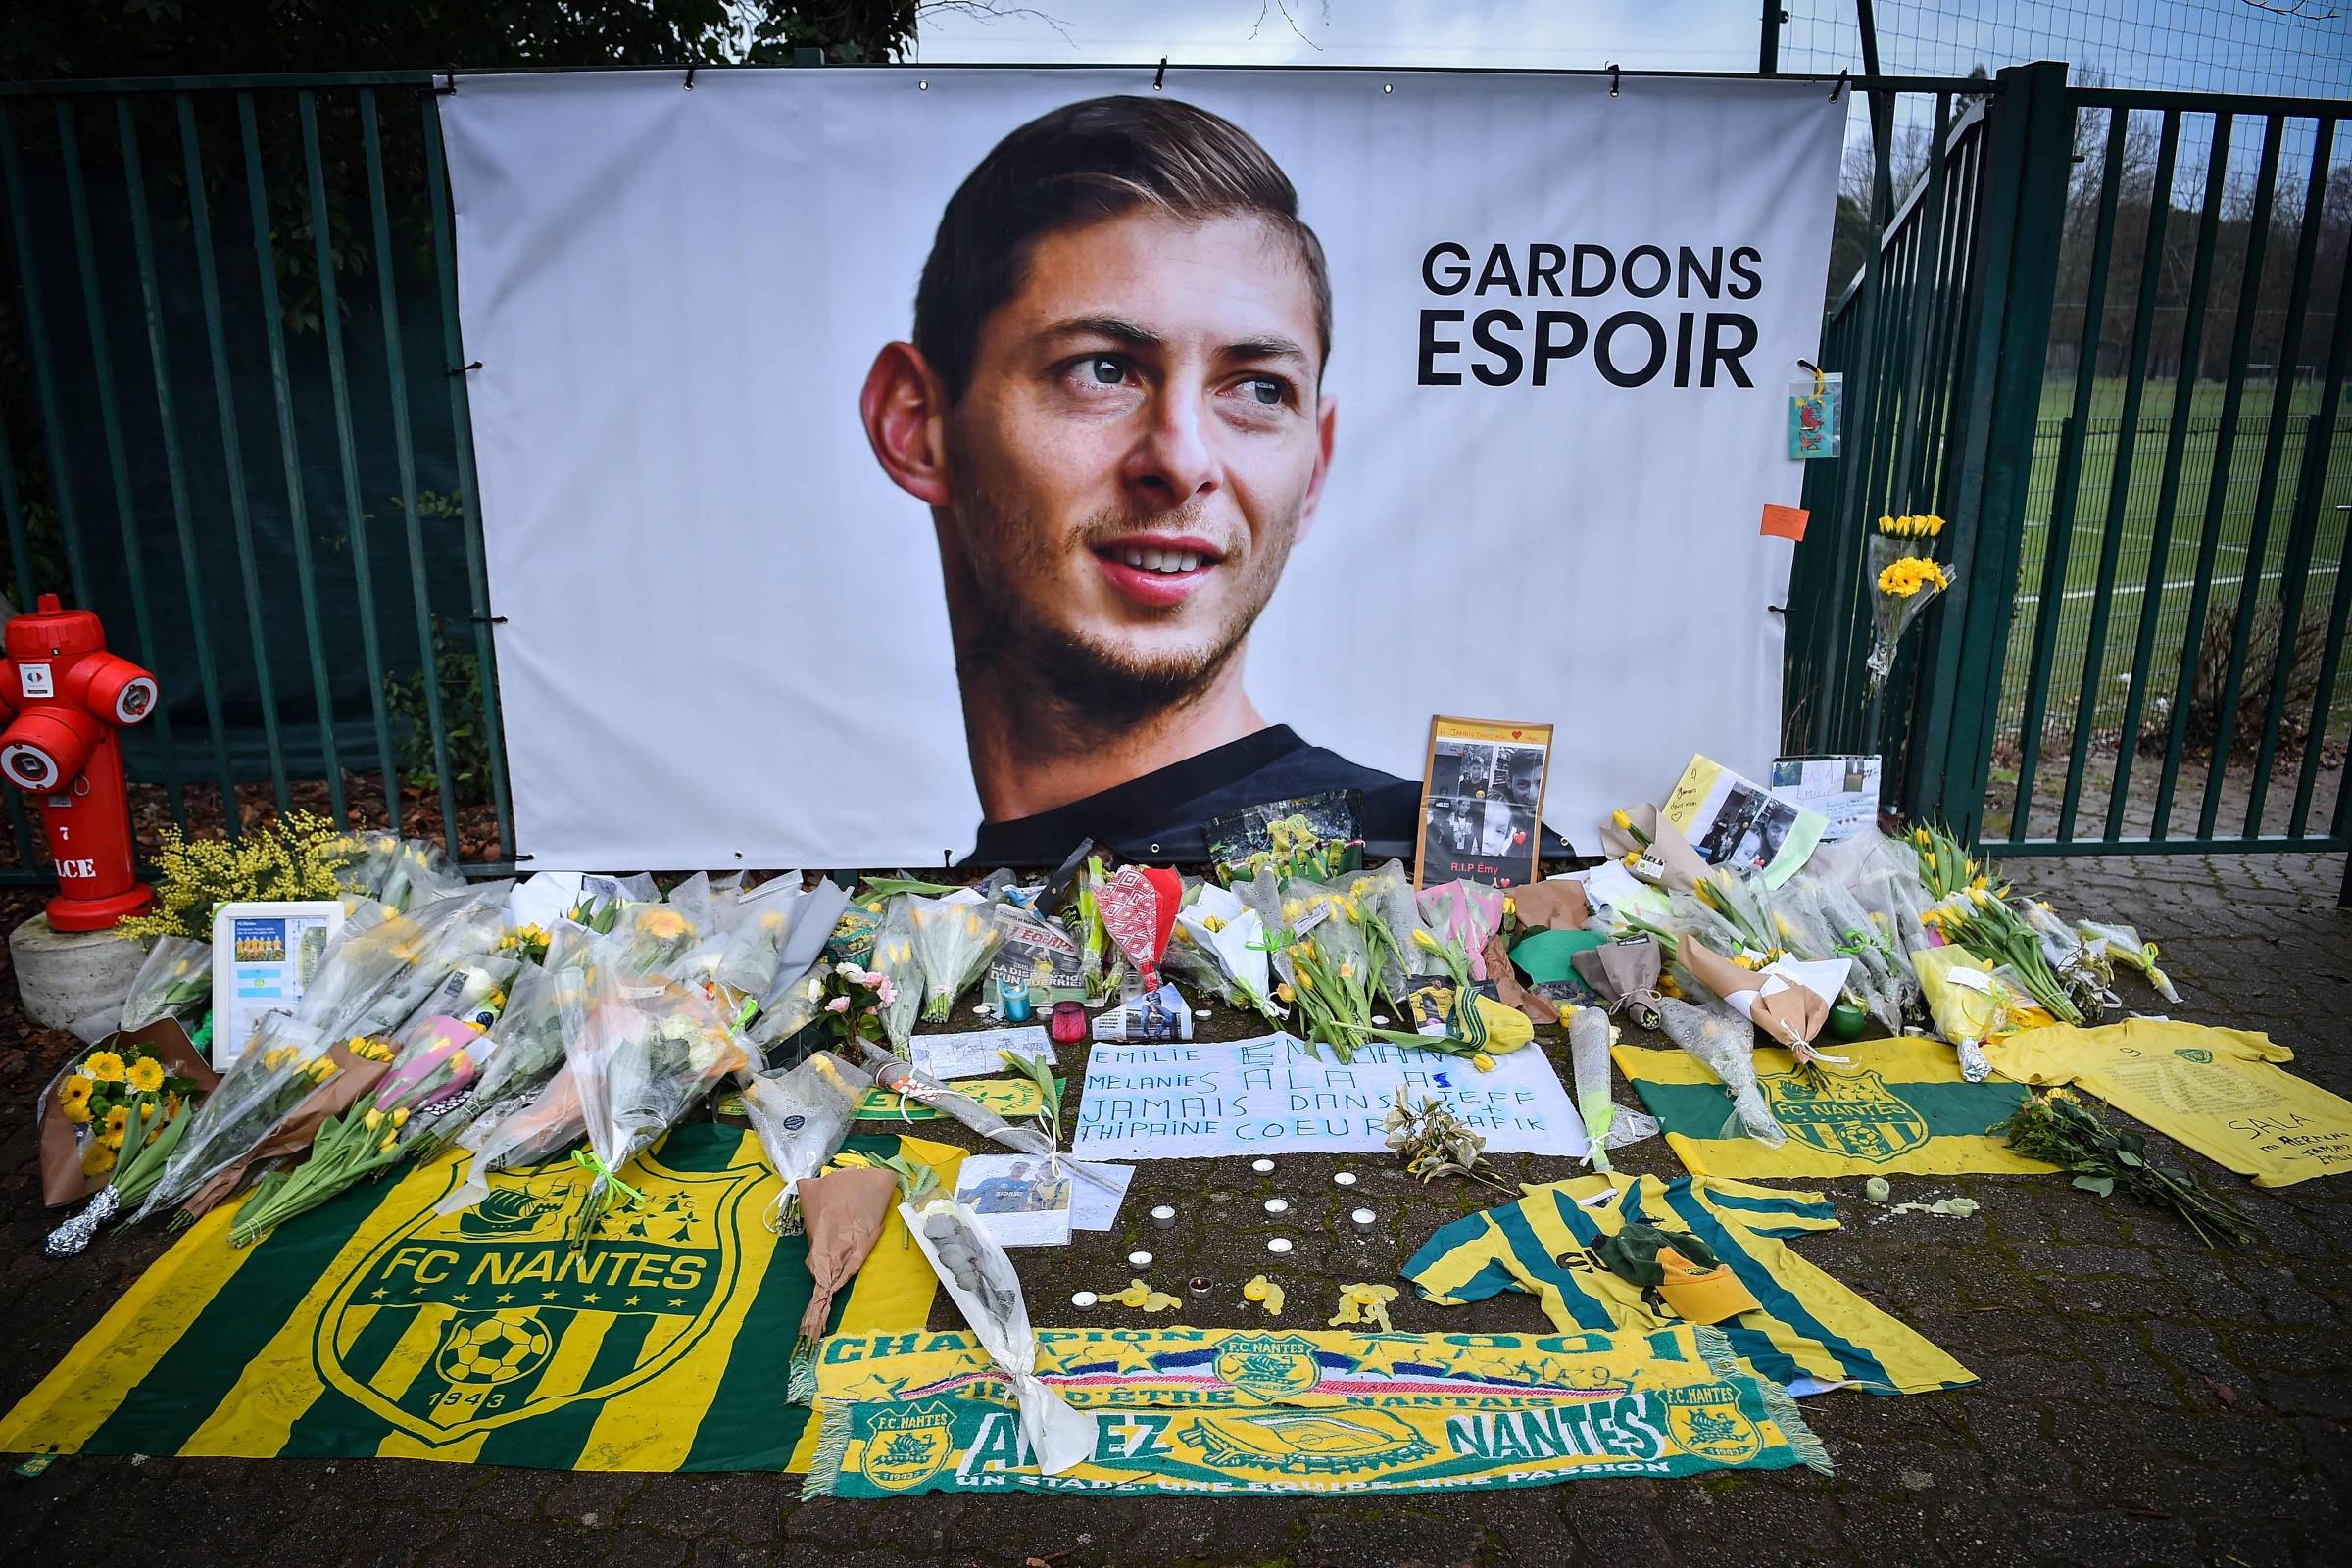 Sala morreu antes de realizar sonho de jogar na Argentina - 07/02/2019 -  Esporte - Folha